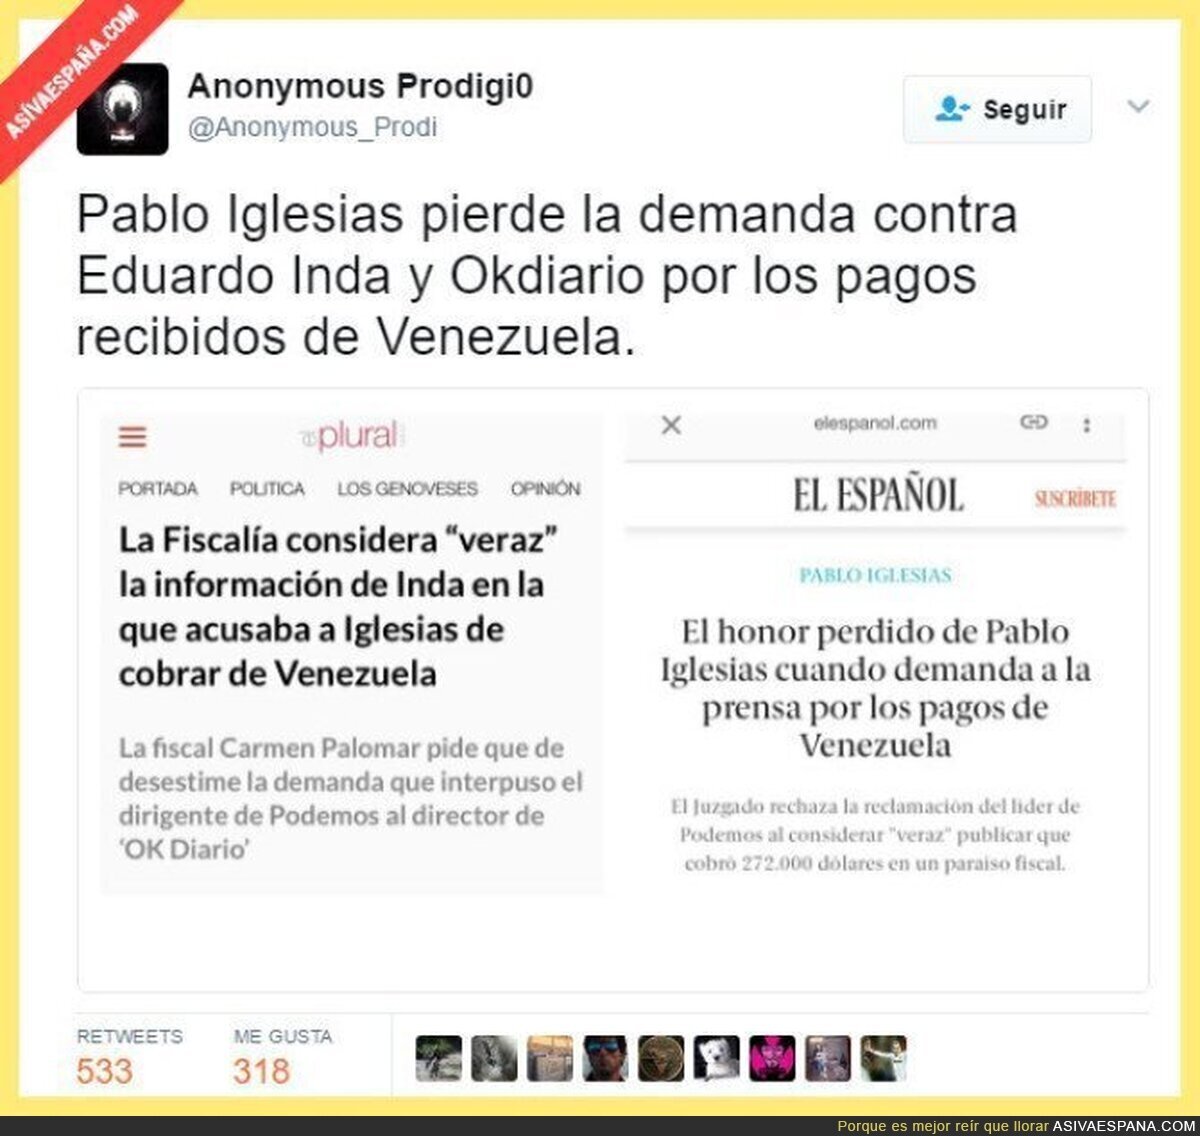 Archivan la demanda de Pablo Iglesias contra Eduardo Inda